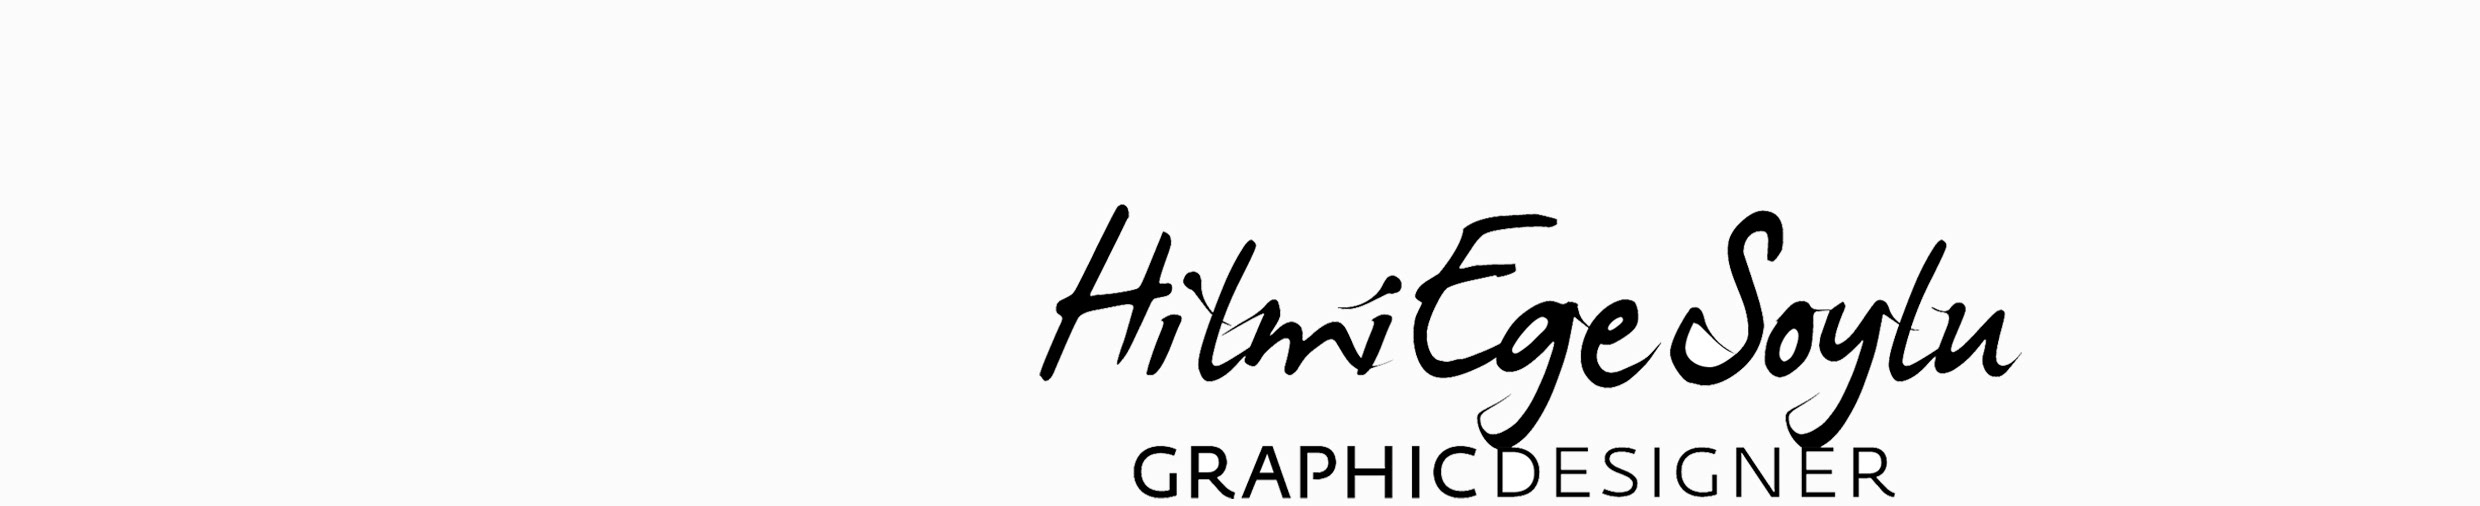 Banner de perfil de Hilmi Ege SOYLU